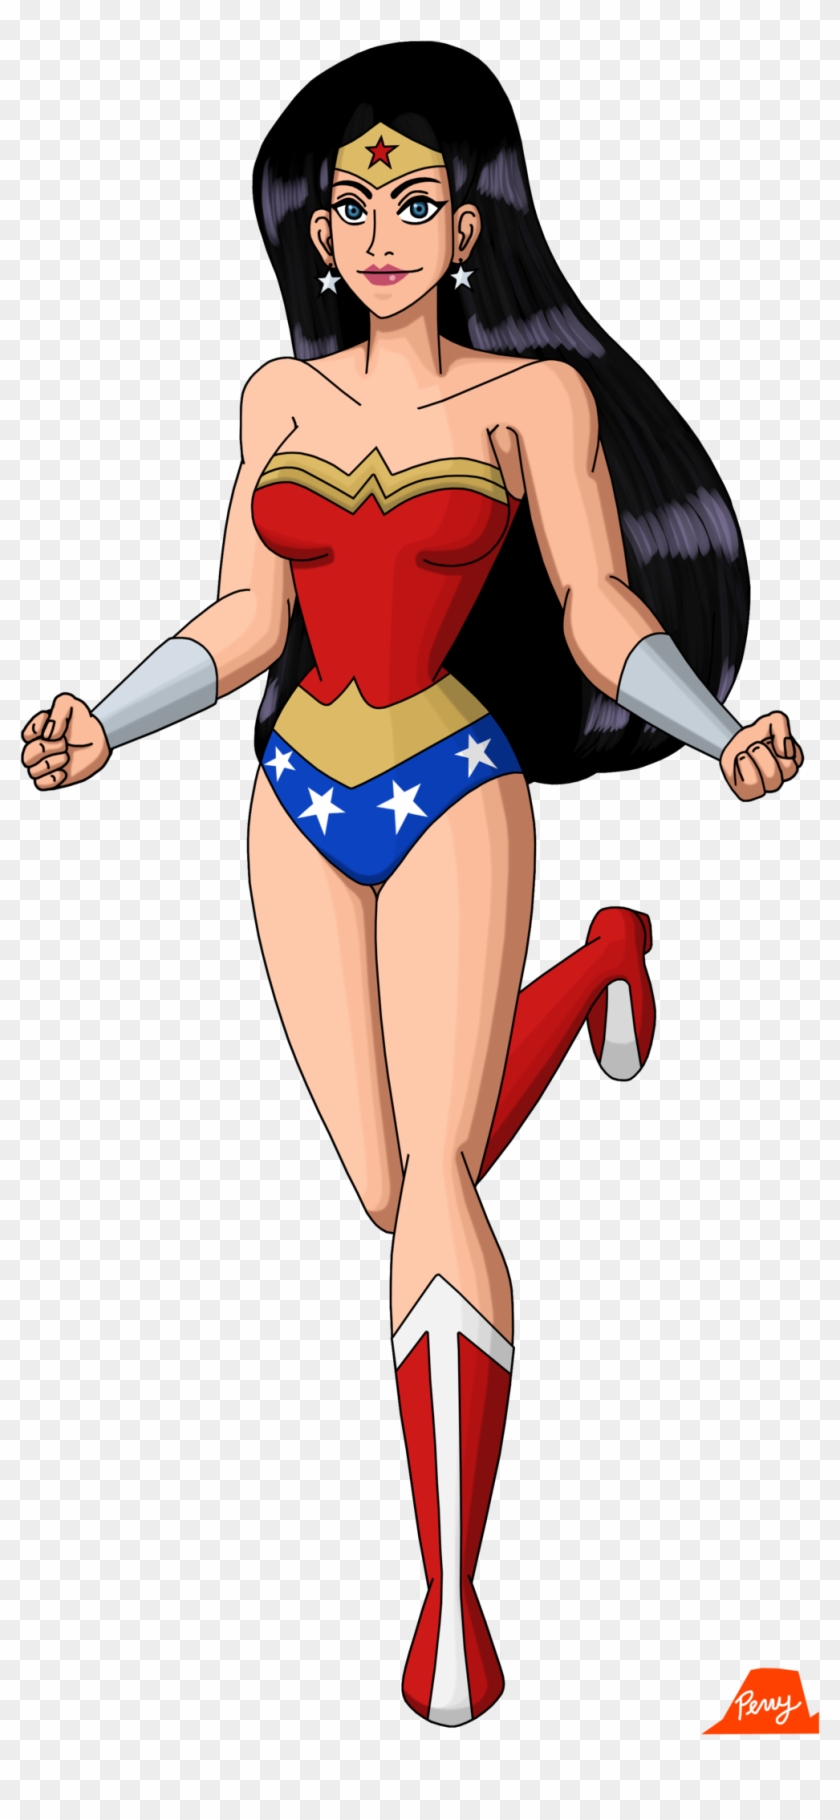 Wonder Woman 2017 By Perrywhite - Wonder Woman Cartoon Character #765181